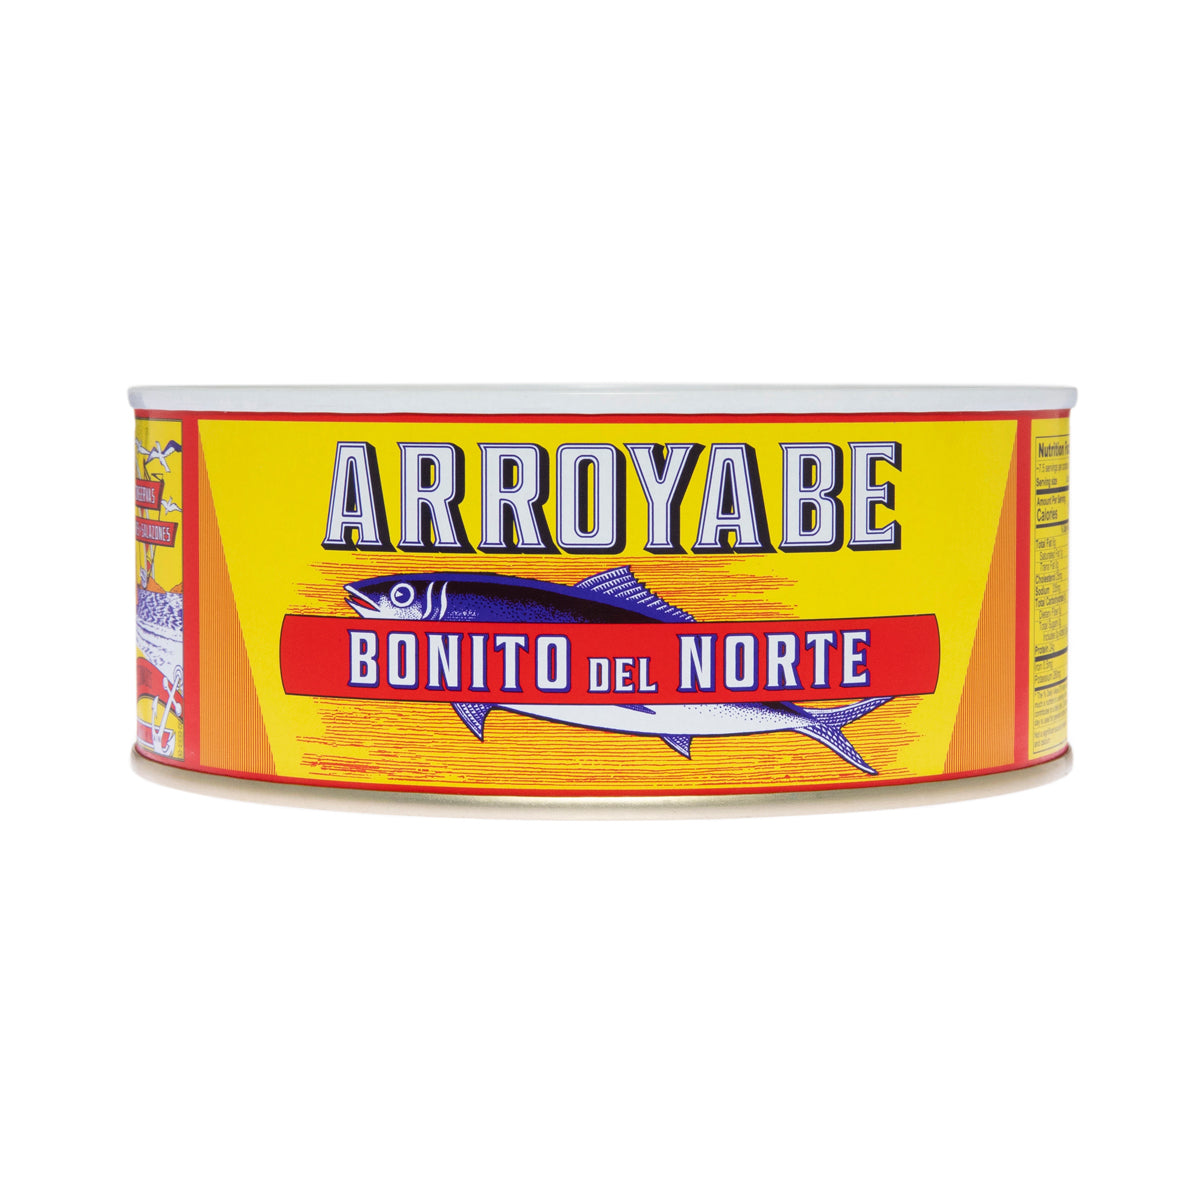 Arroyabe Spanish Boito Tuna in Olive Oil 2.2 lb Can